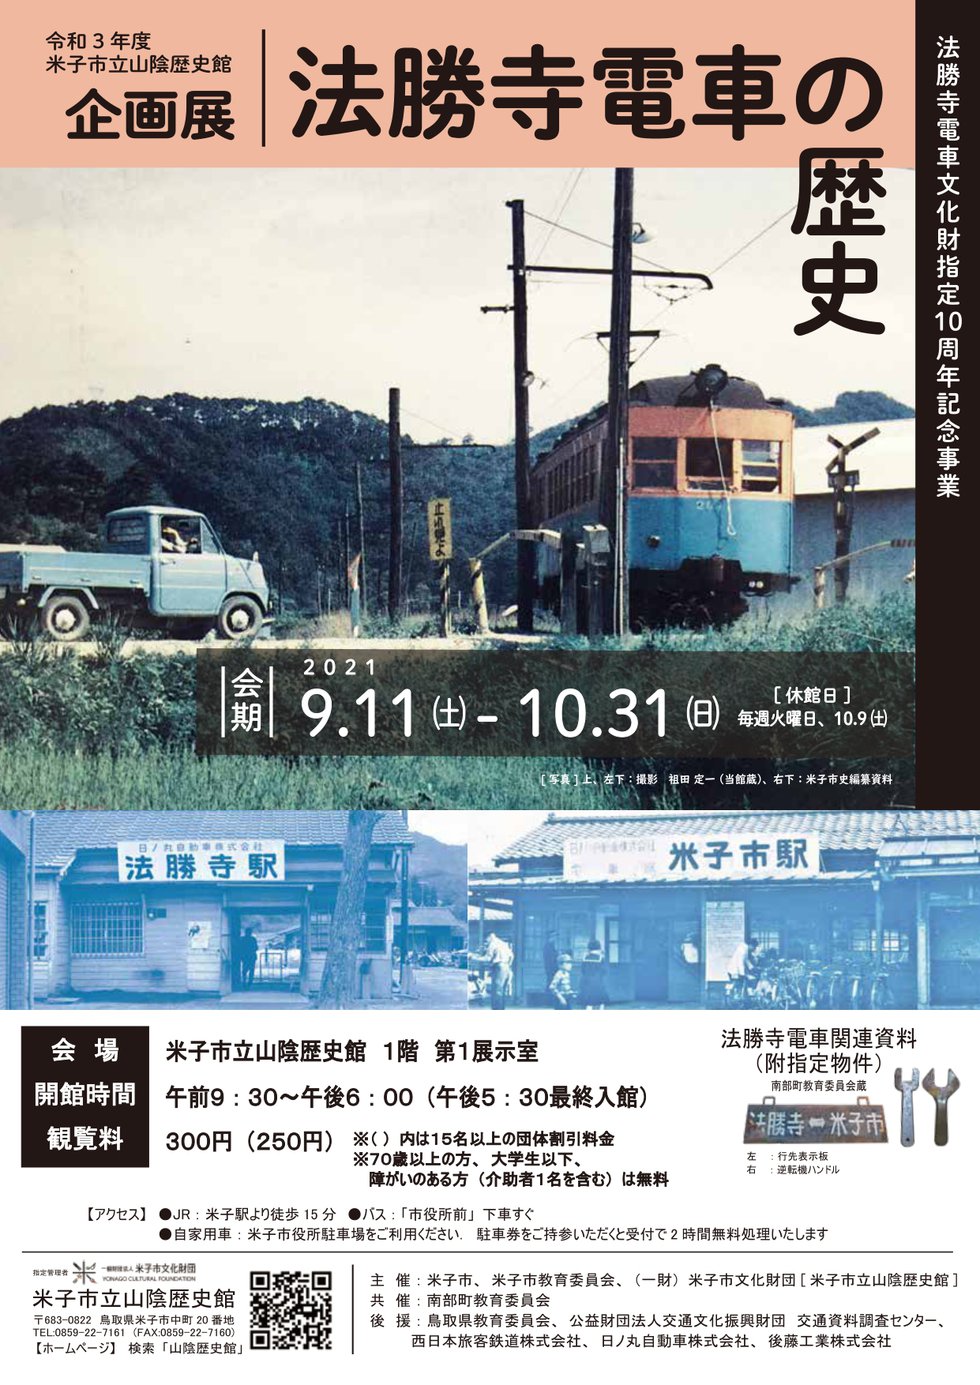 企画展「法勝寺電車の歴史」チラシ_page-0001.jpg